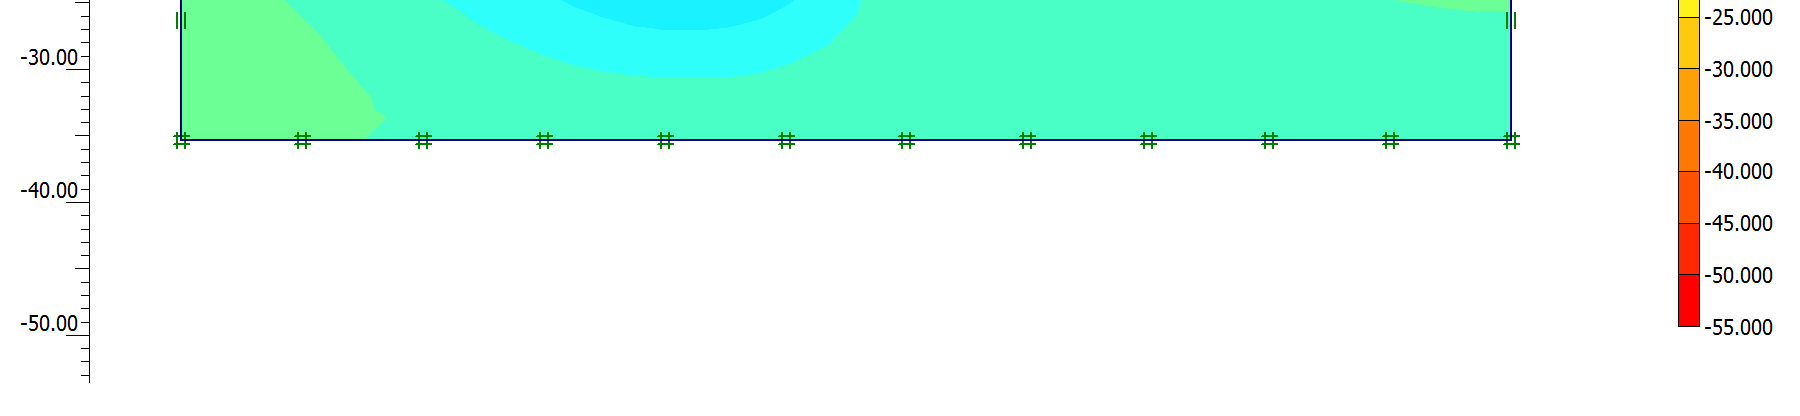 horizontal entre os tirantes igual a 1,5 m, espessura da parede igual a